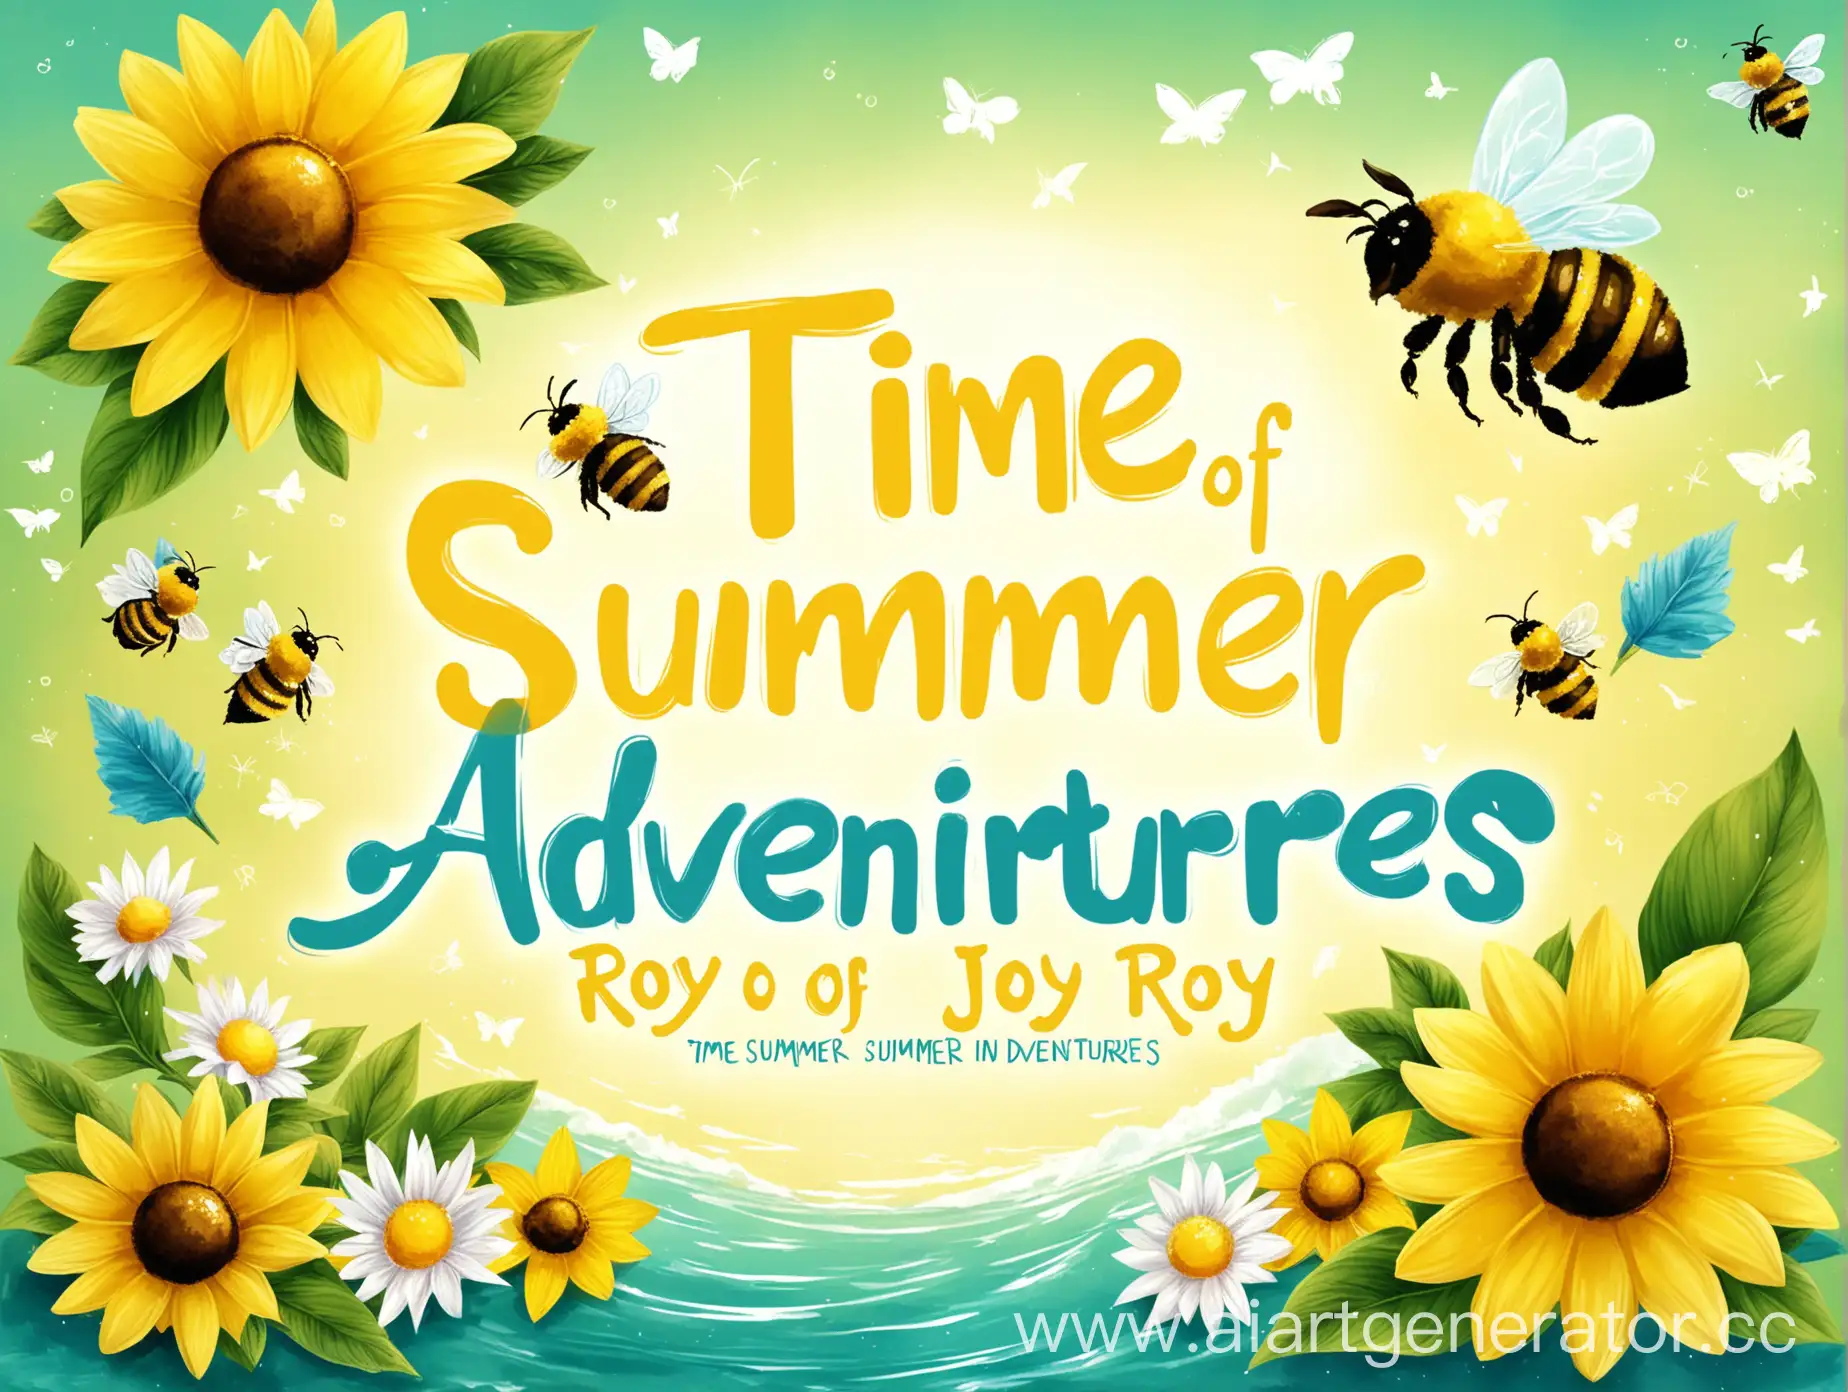 обложка в зеленом, желтом, синем и белом цвете  для социальной сети с пчелой в желтом цвете и надпись "Время летних приключений в Рой Джой"